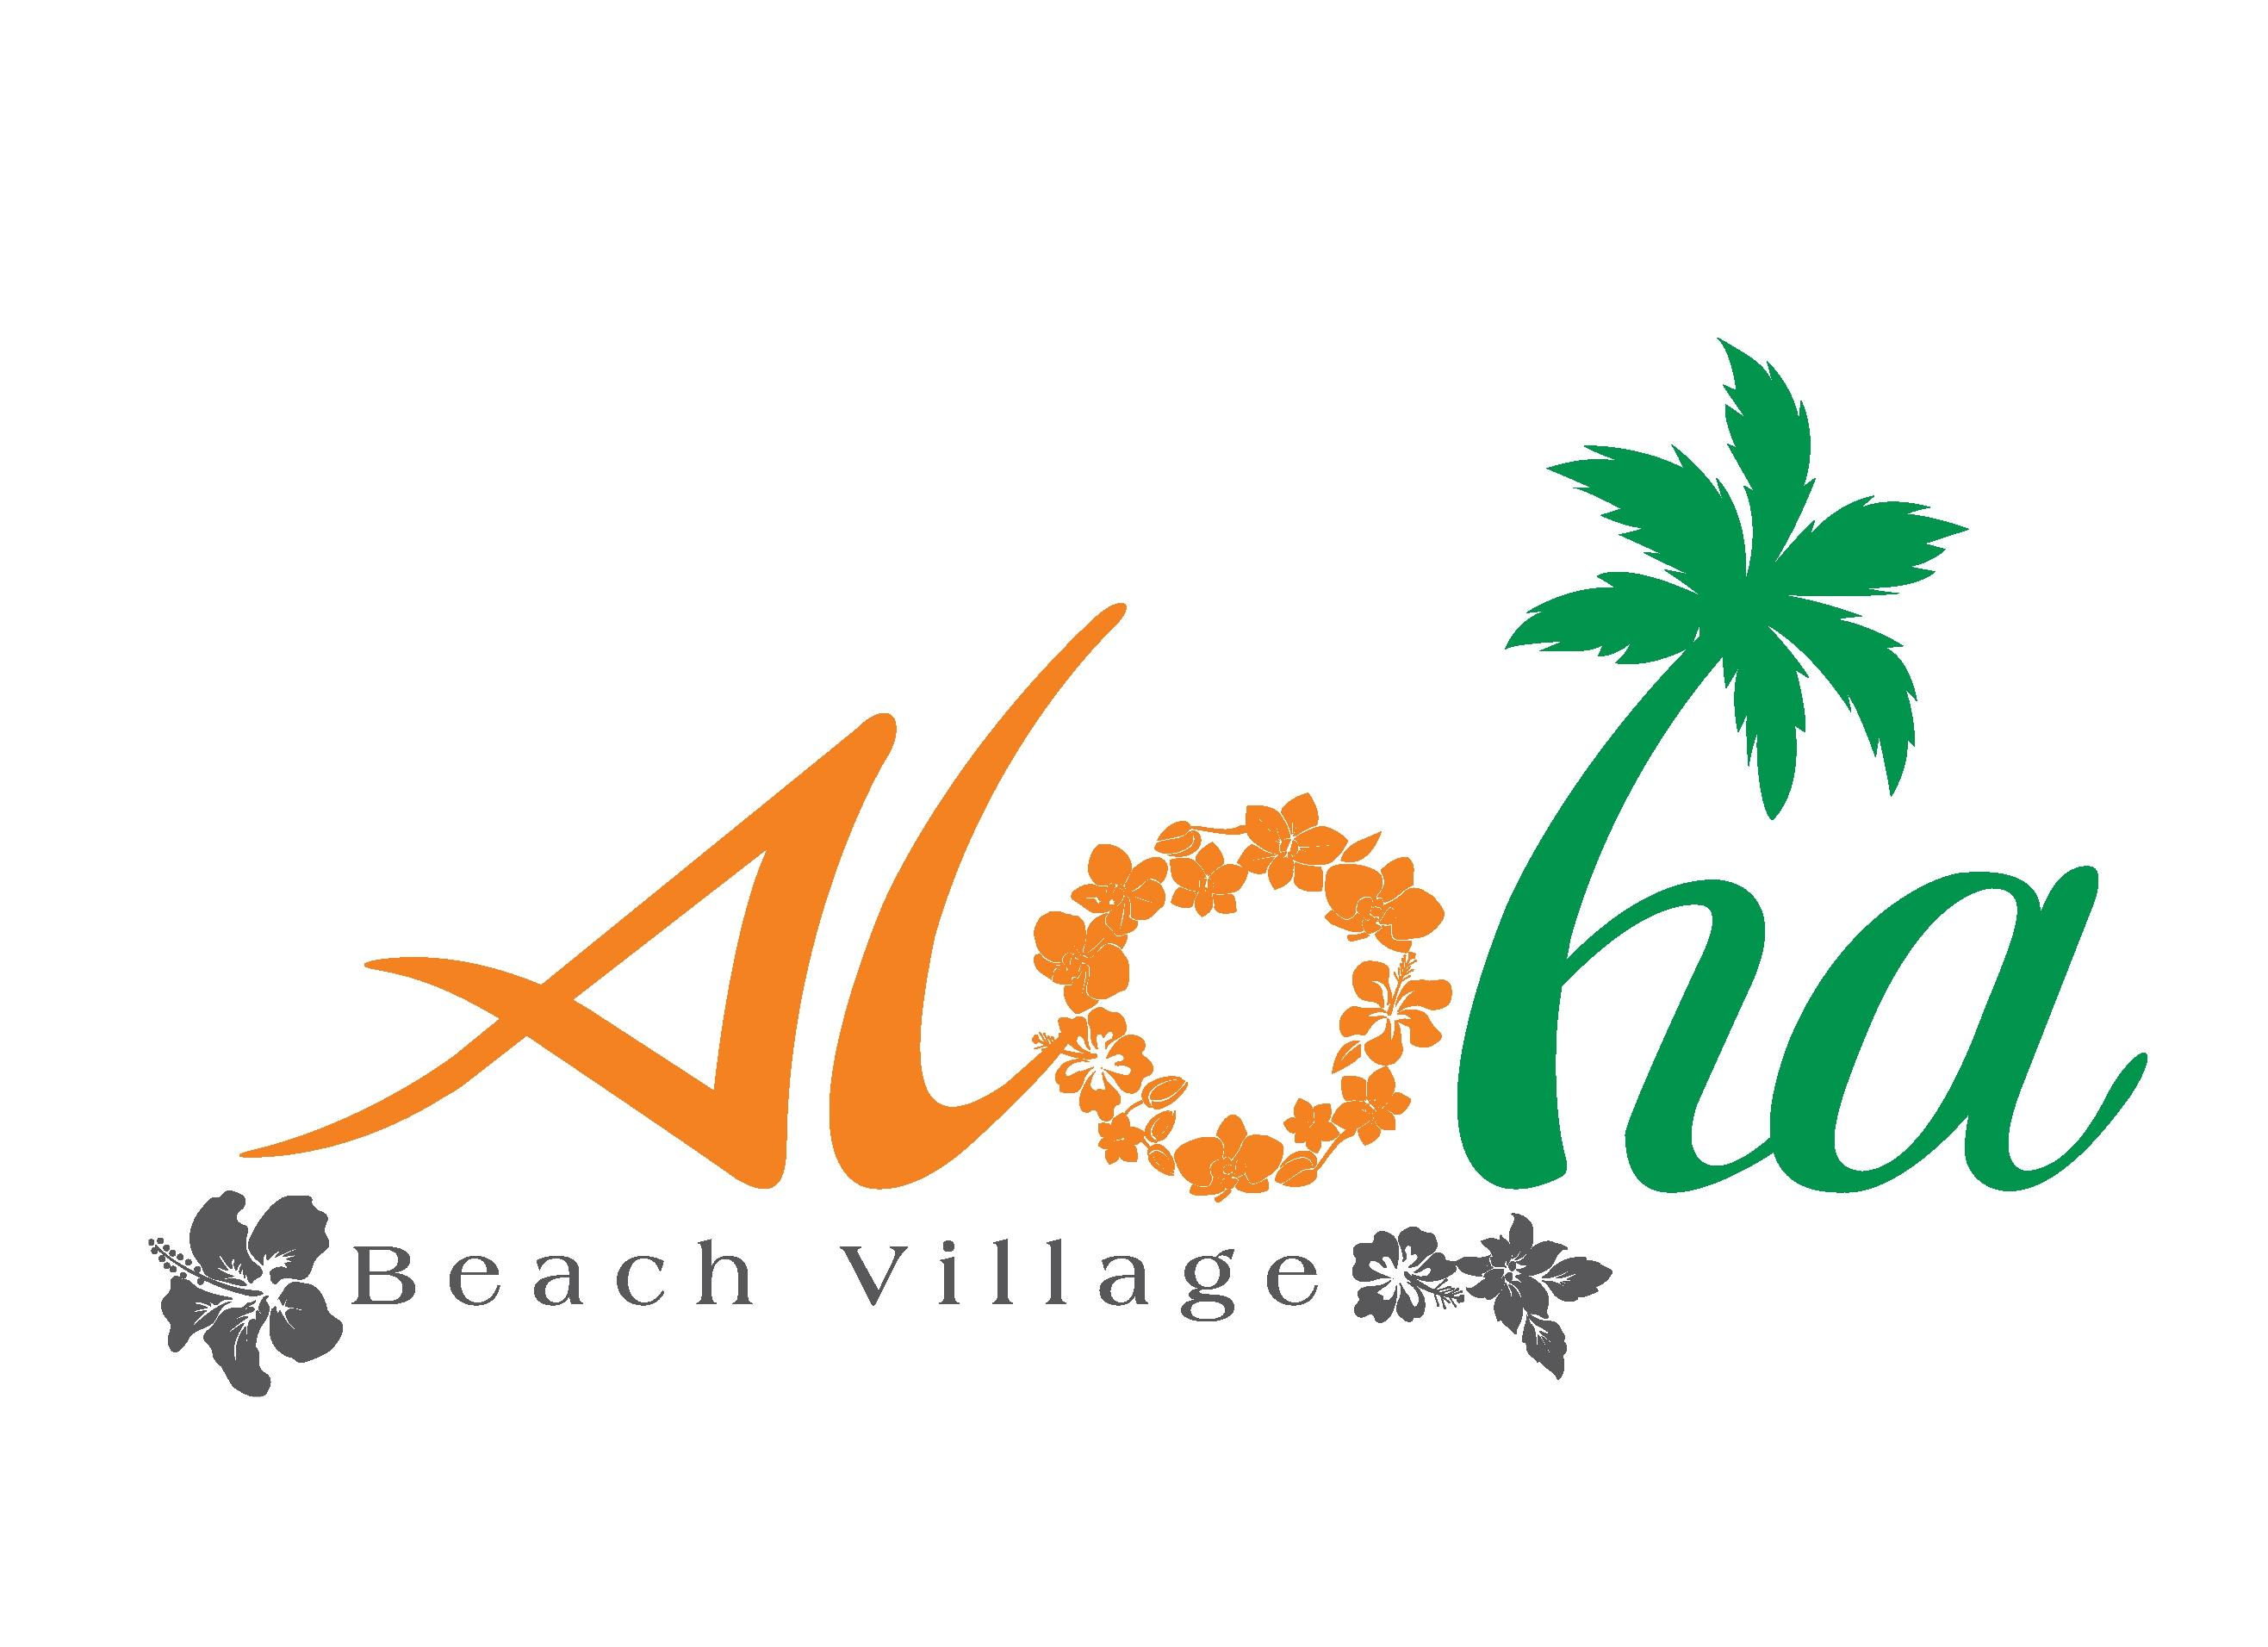 Aloha Beach Village Phan Thiết